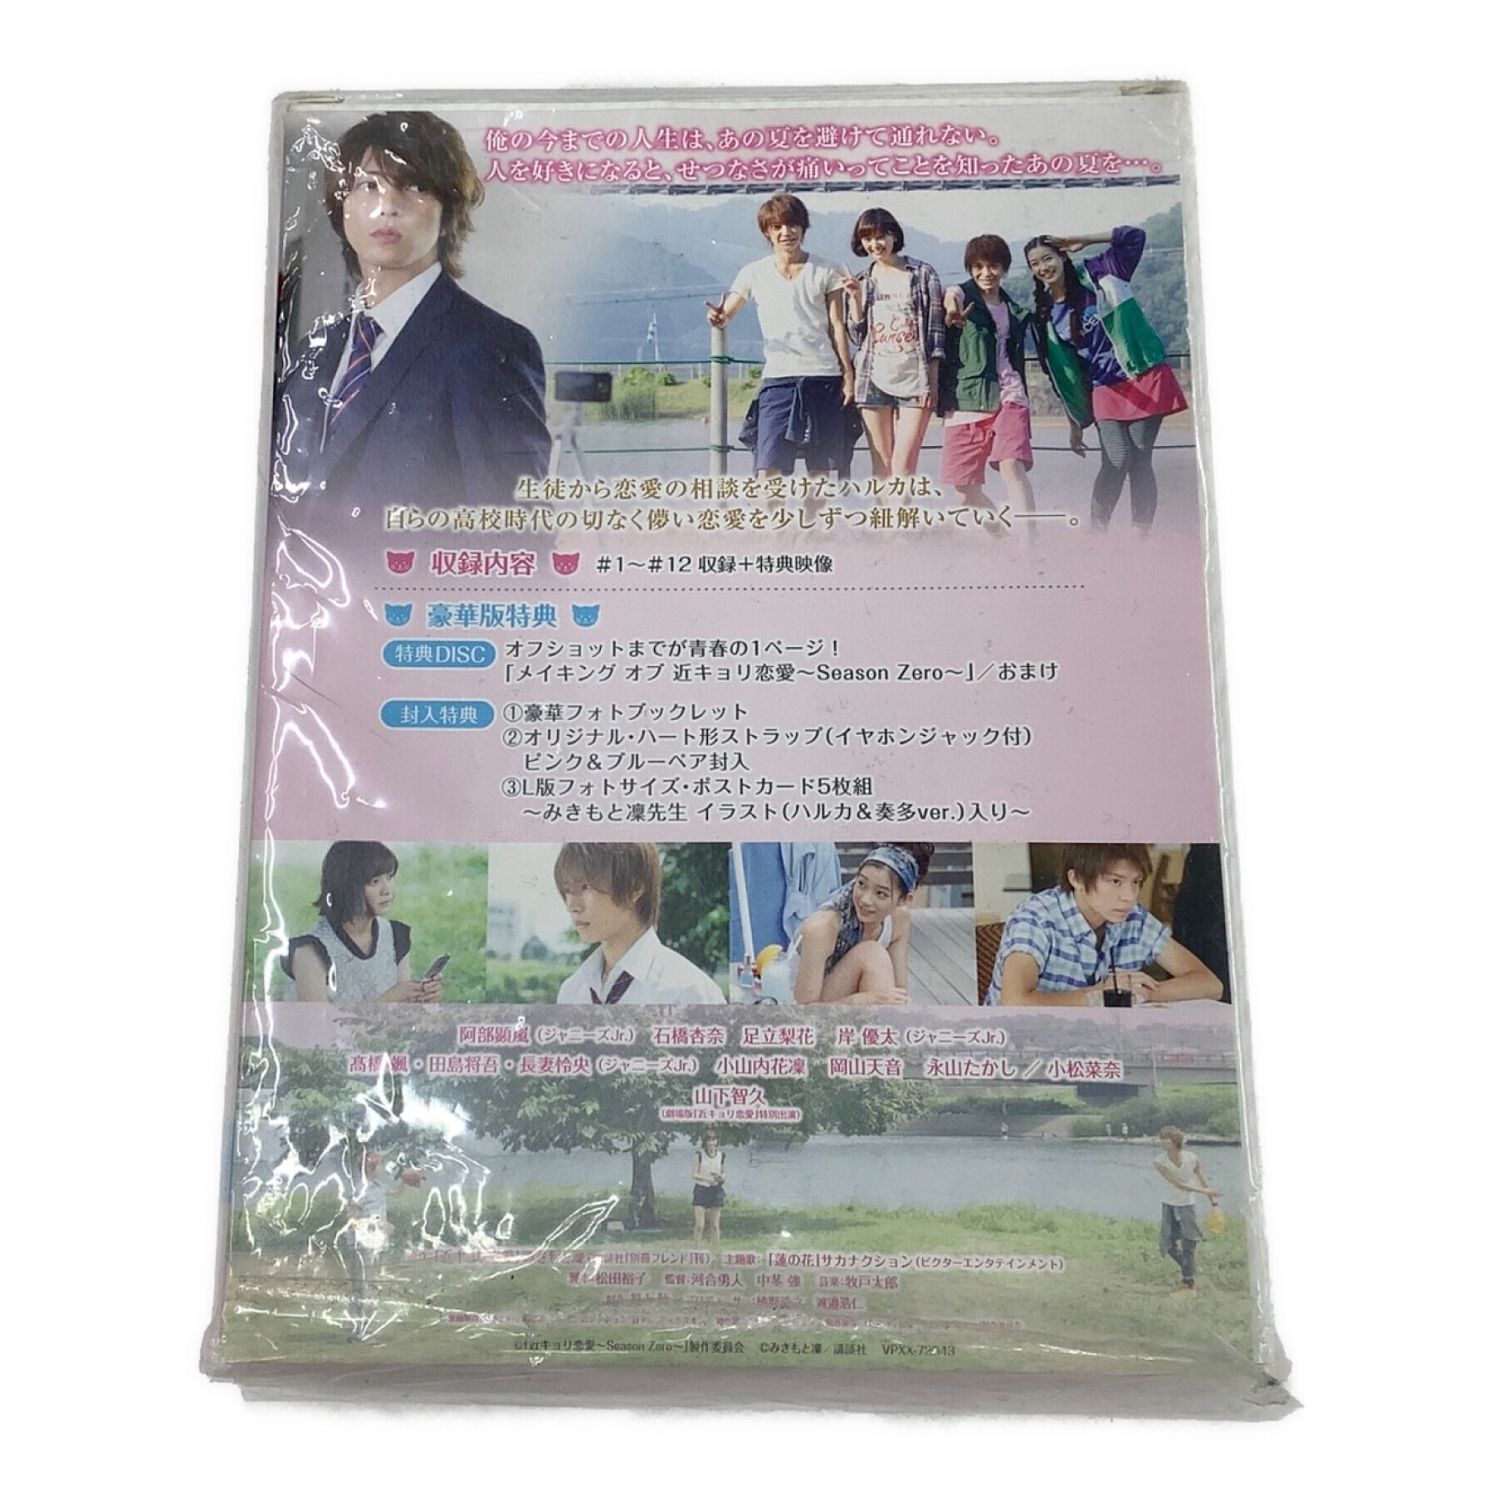 バップ 近キョリ恋愛 ～Season Zero～ Blu-ray BOX豪華版 初回限定生産